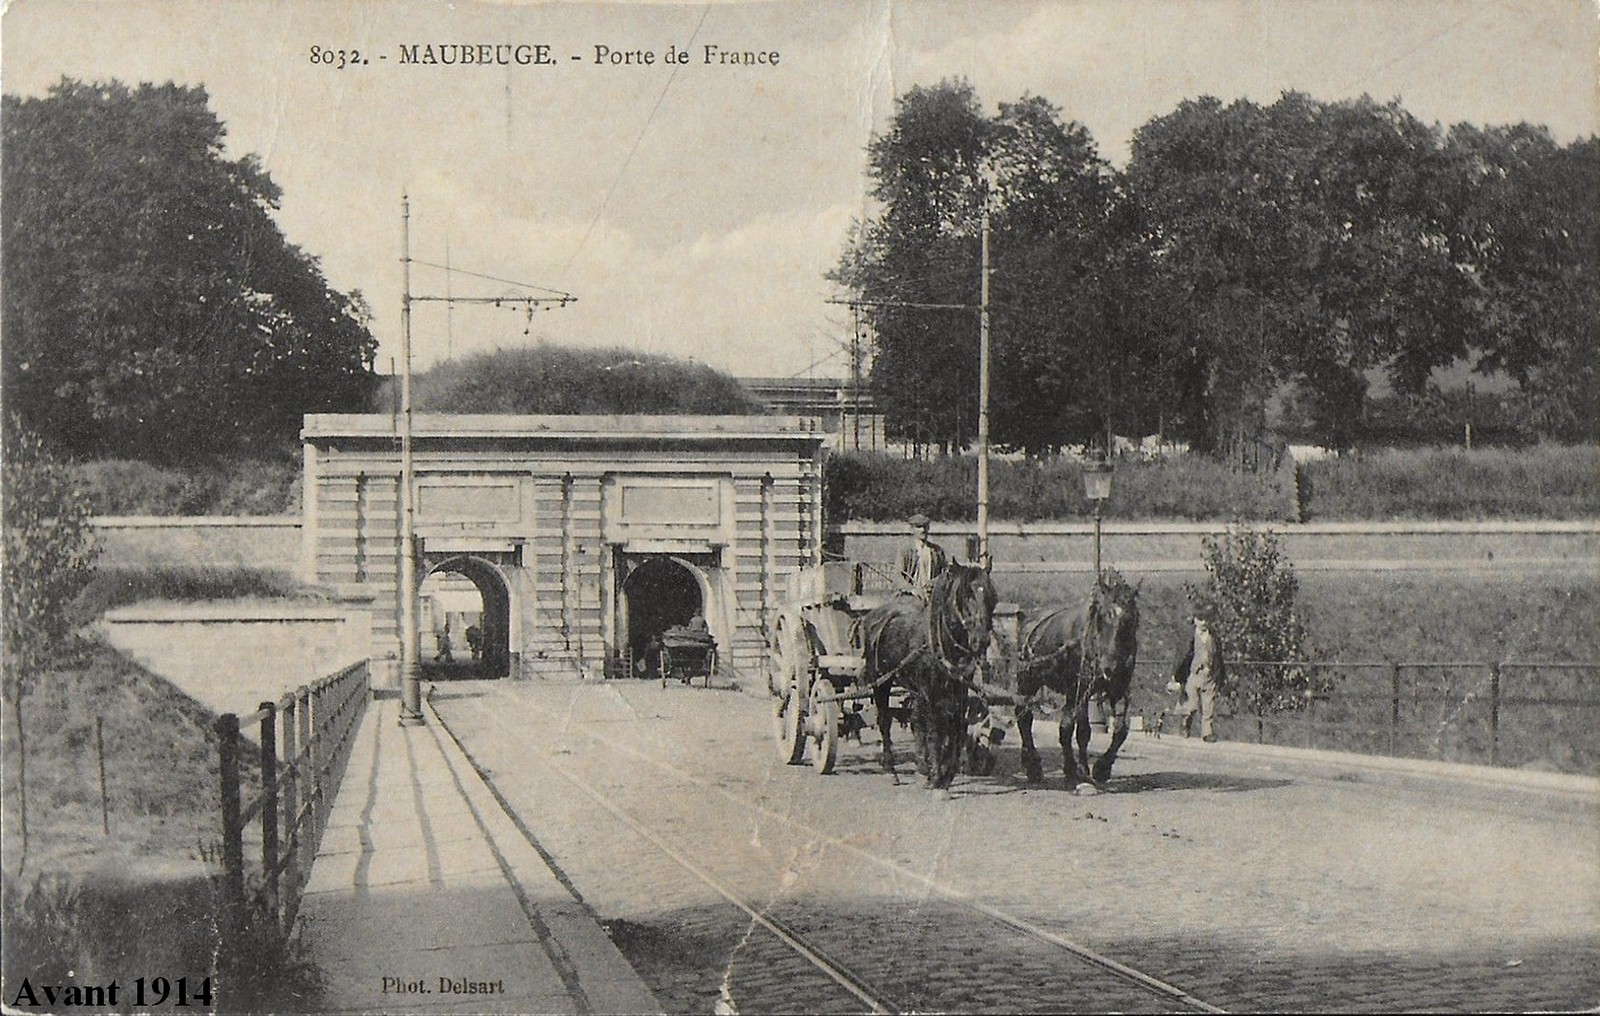 Remparts de Maubeuge, la porte de France coté sortie de ville.